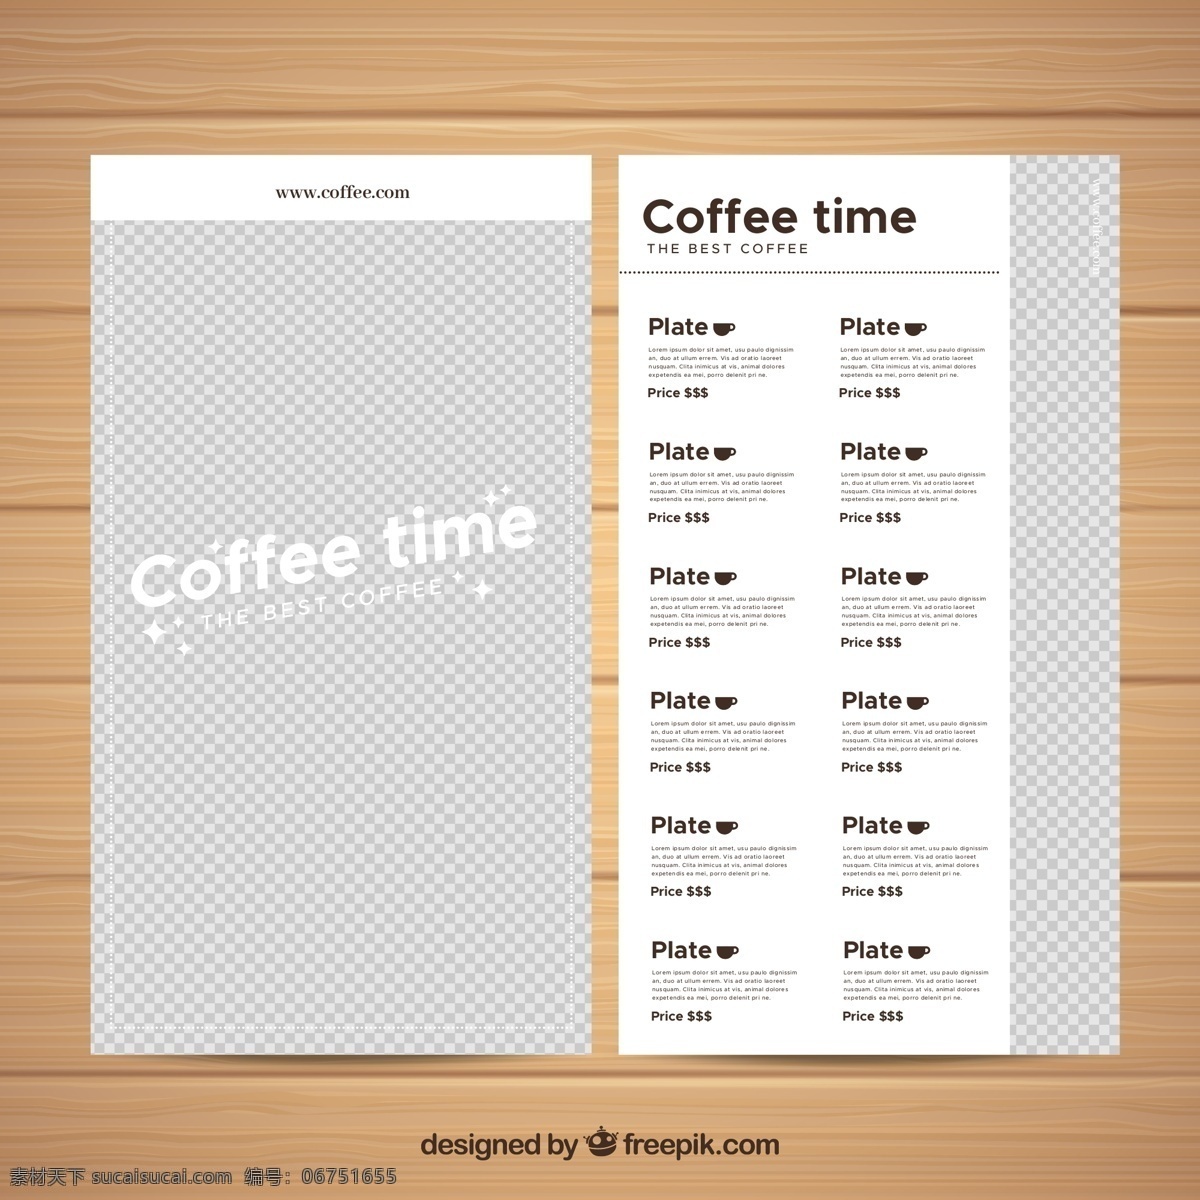 创意 咖啡豆 咖啡馆 菜单 正反面 木板 网址 咖啡 菜单菜谱